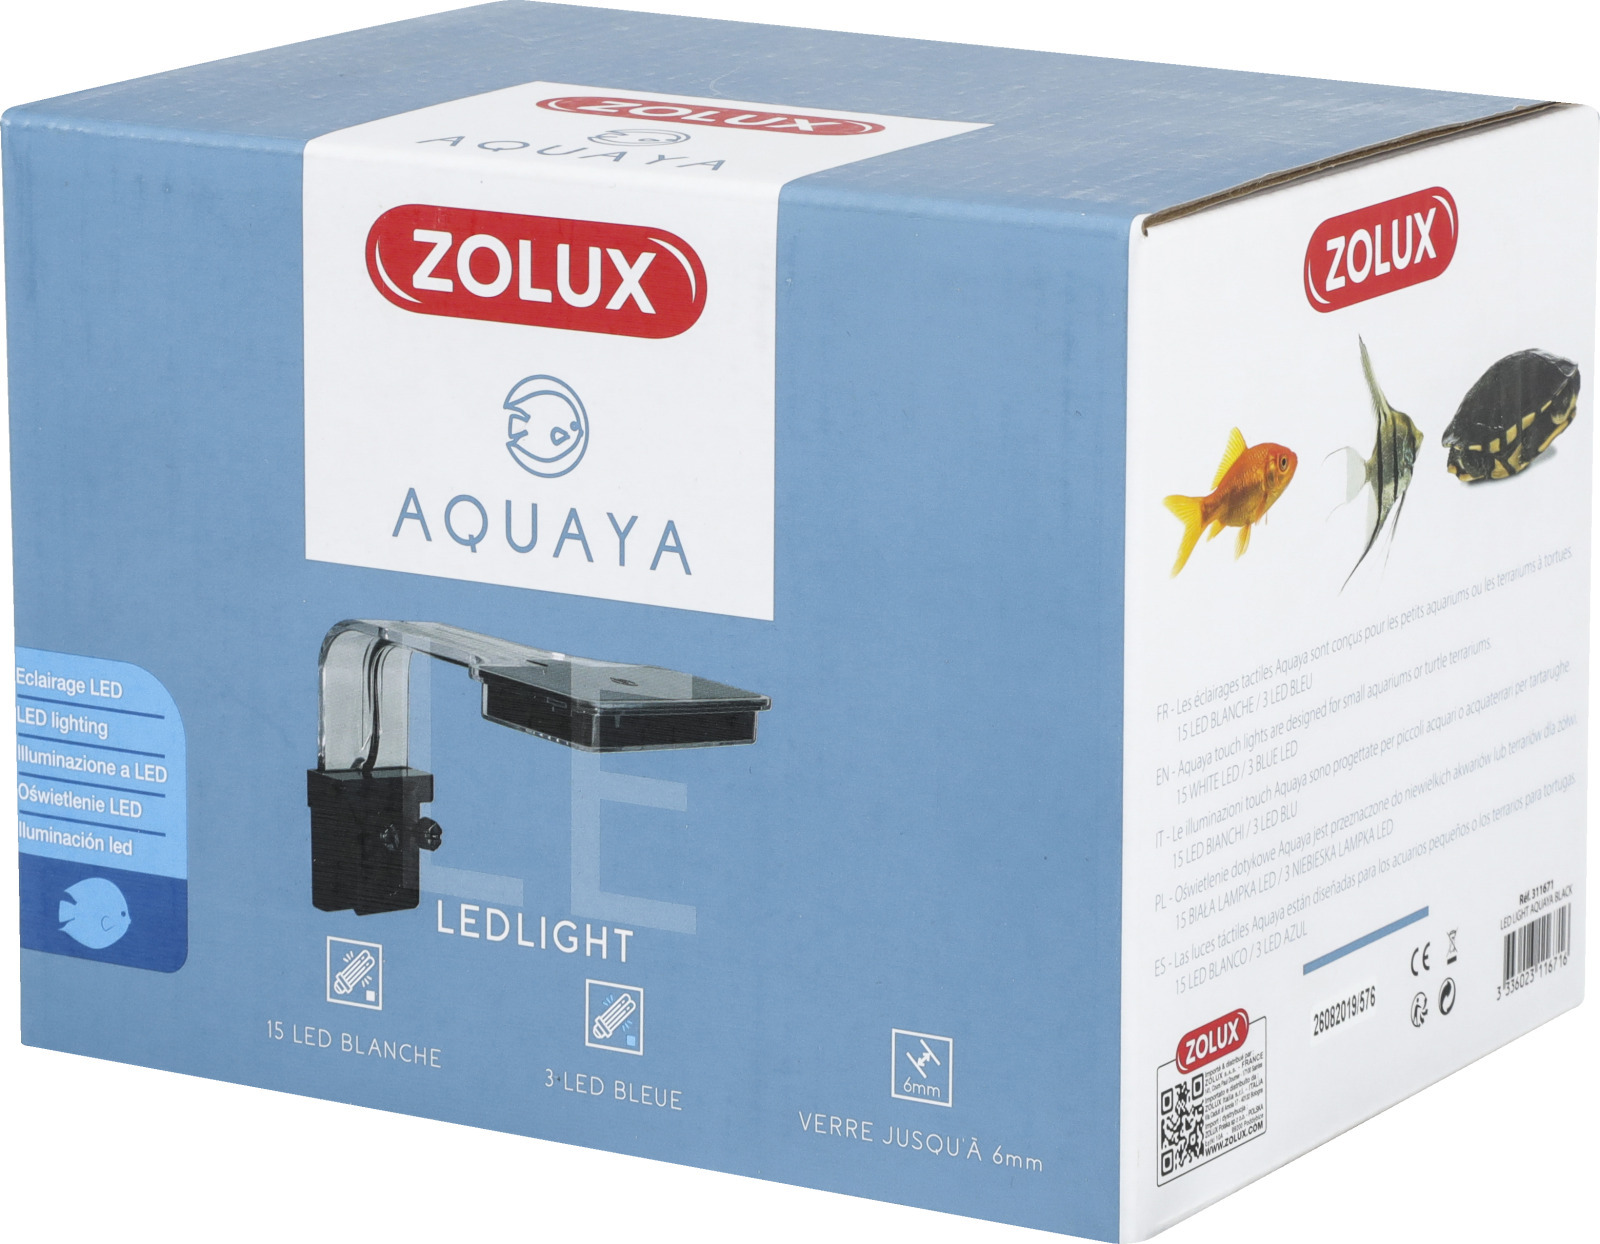 ZOLUX Aquaya LED Light Black lampe d\'éclairage 3,6 W pour aquarium d\'eau douce et aquaterrarium